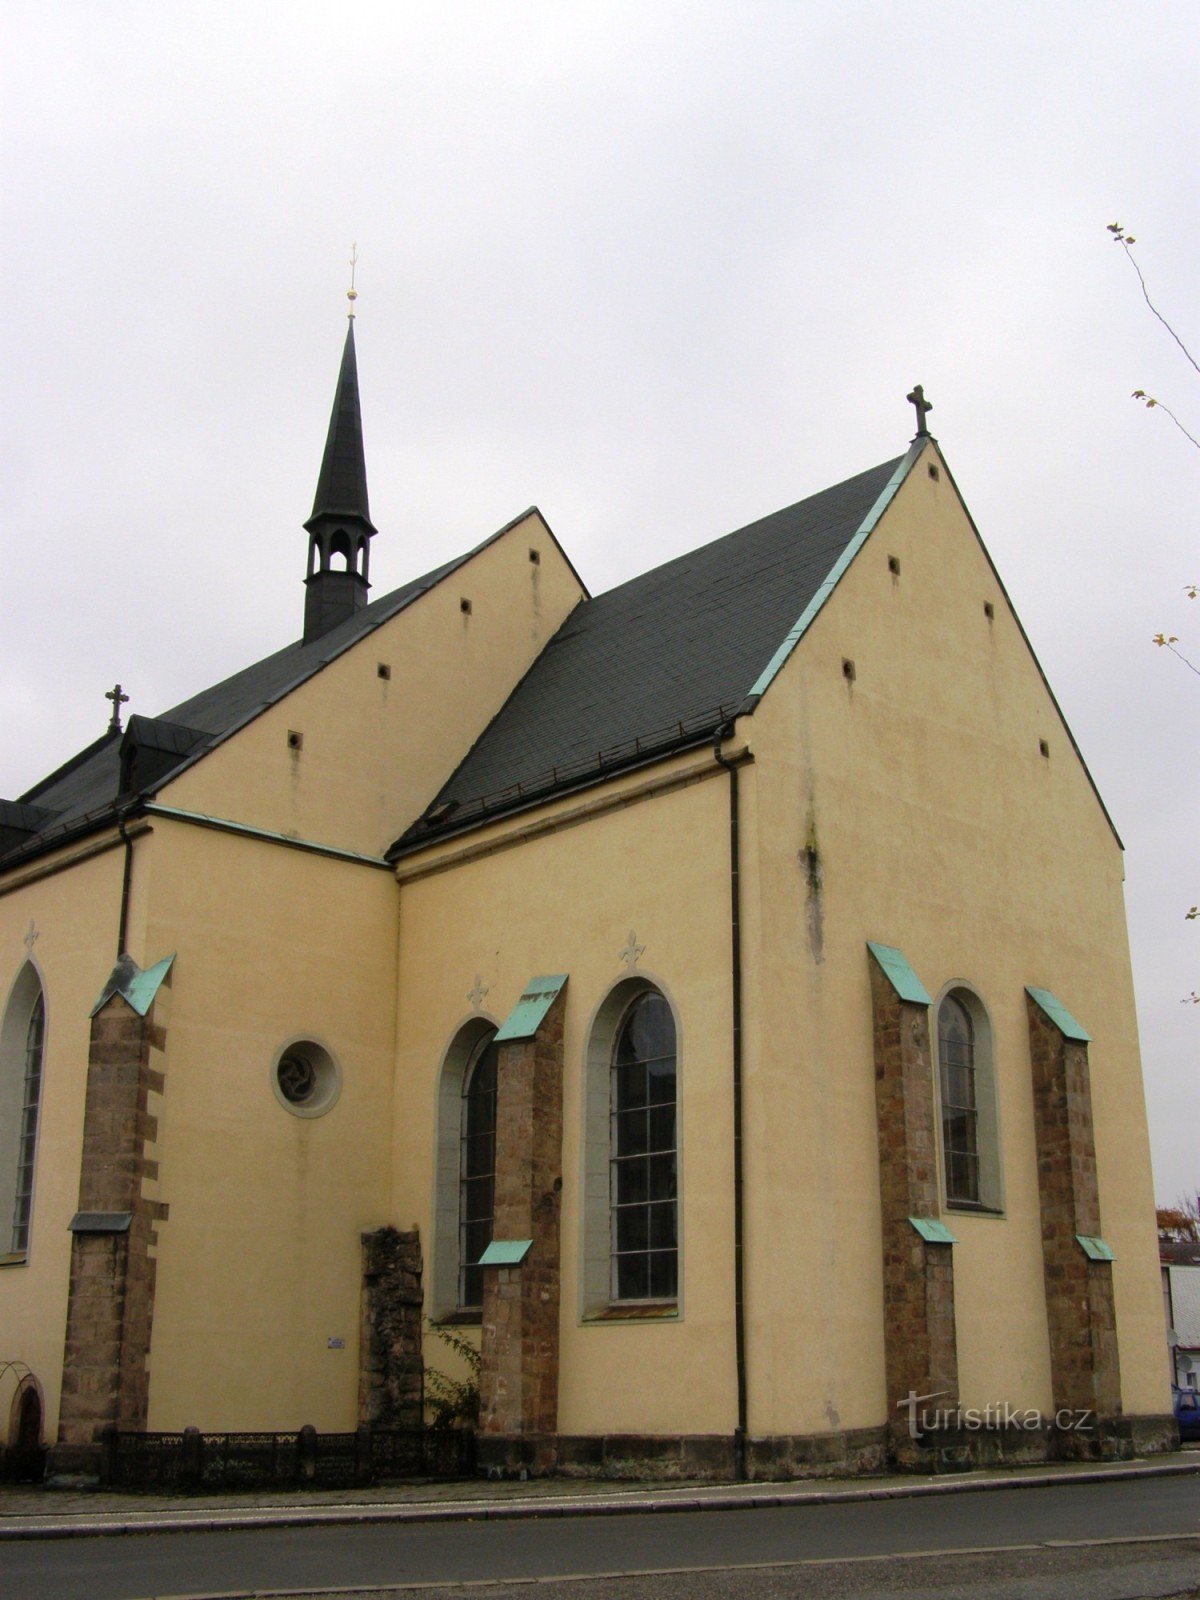 Dvur Králové - Kościół św. Jan Chrzciciel